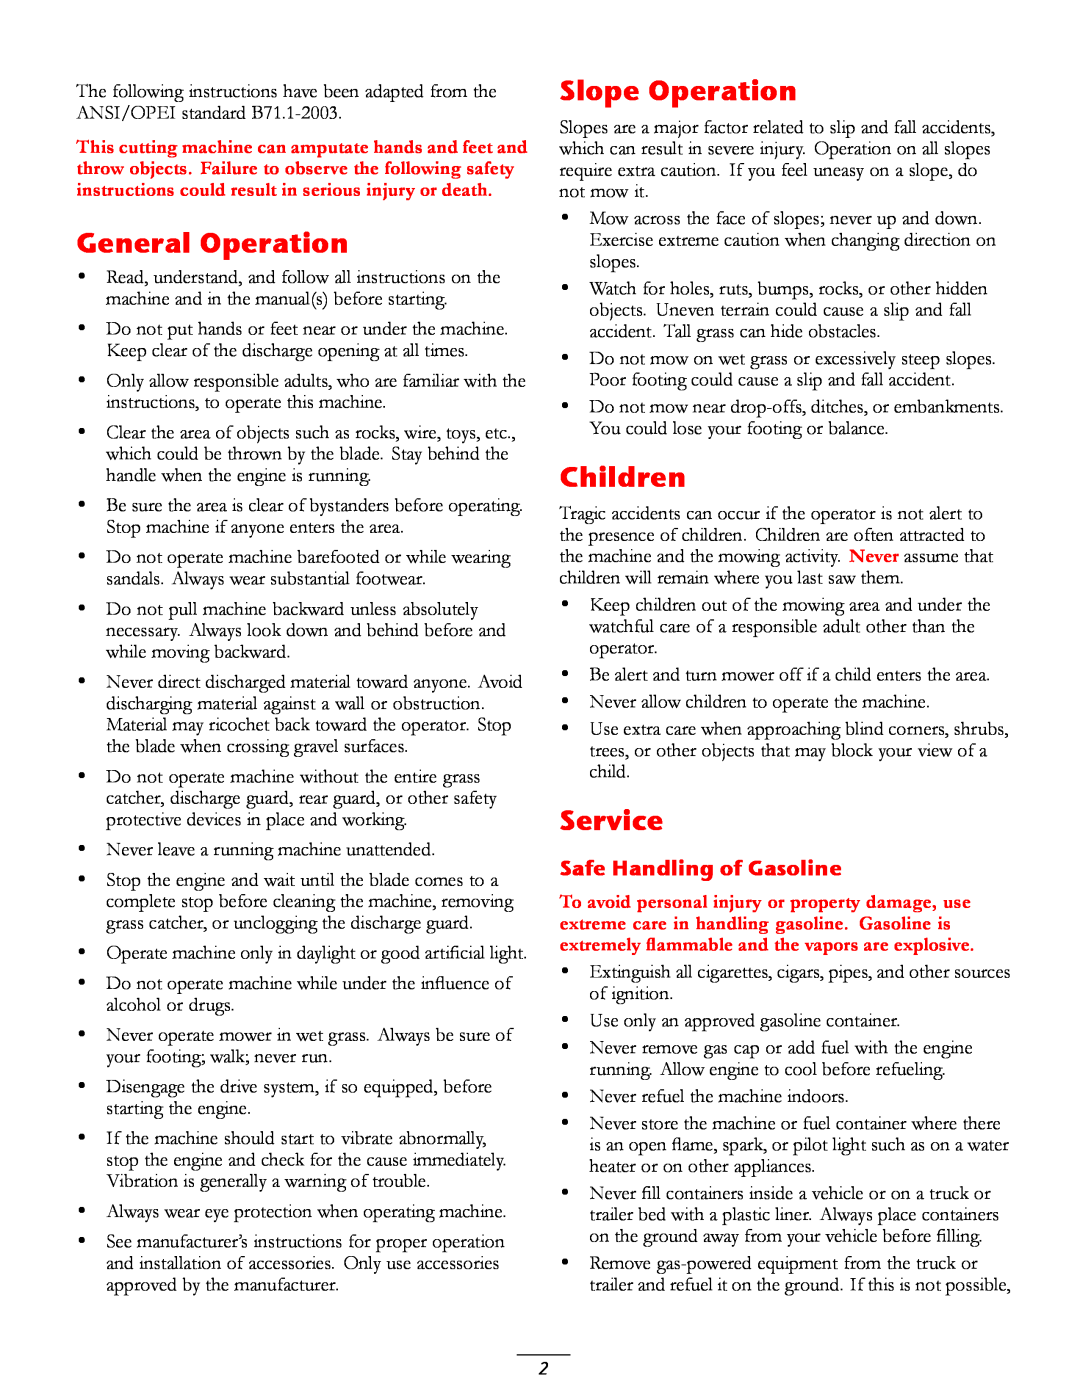 Toro 20016 owner manual General Operation, Slope Operation, Children, Service, Safe Handling of Gasoline 